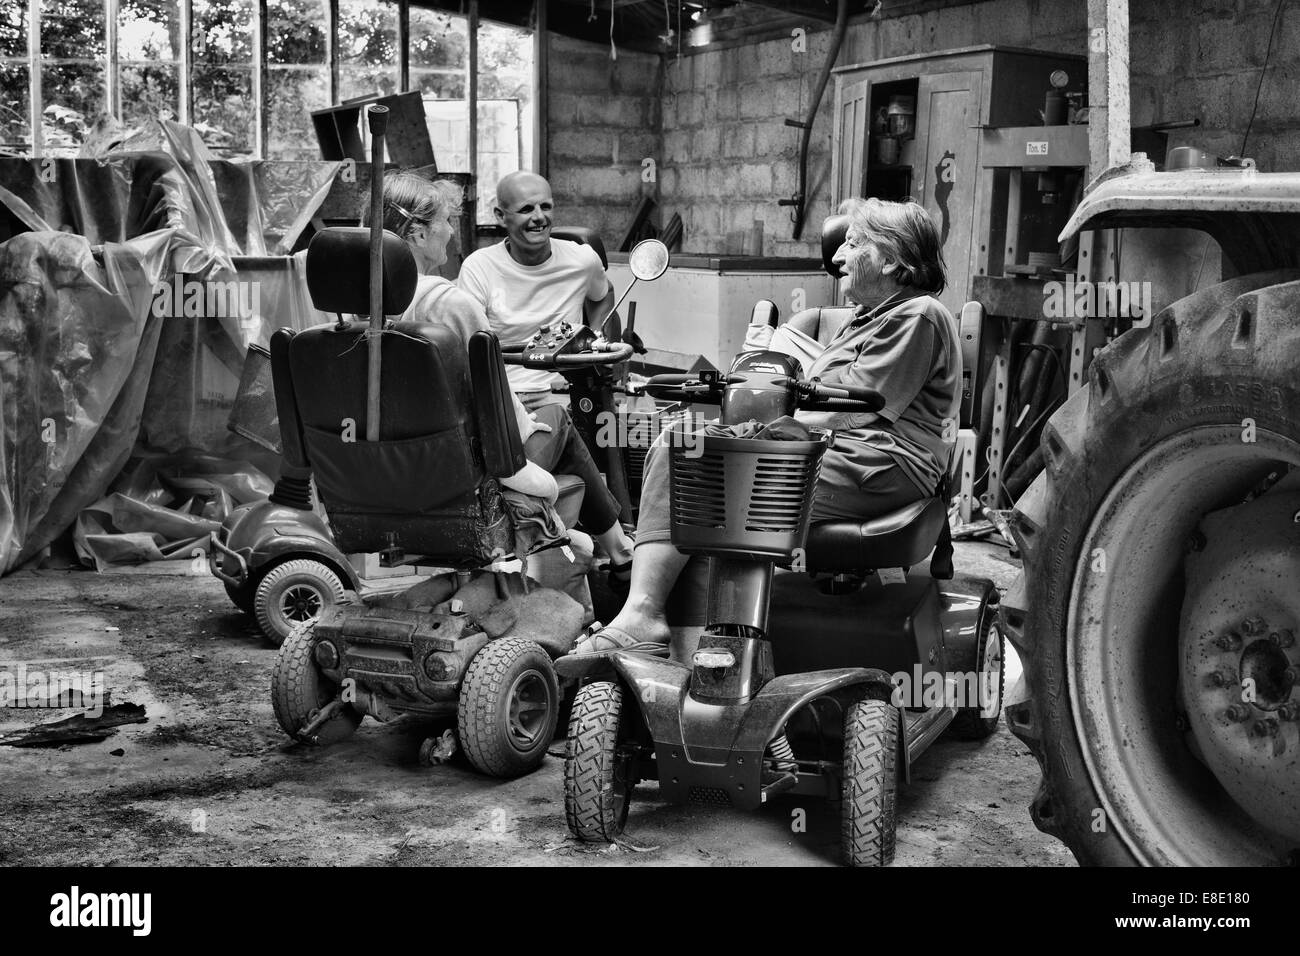 Trois personnes assises sur un fauteuil motorisé en pleine discussion dans un vieux hangar du tracteur Banque D'Images